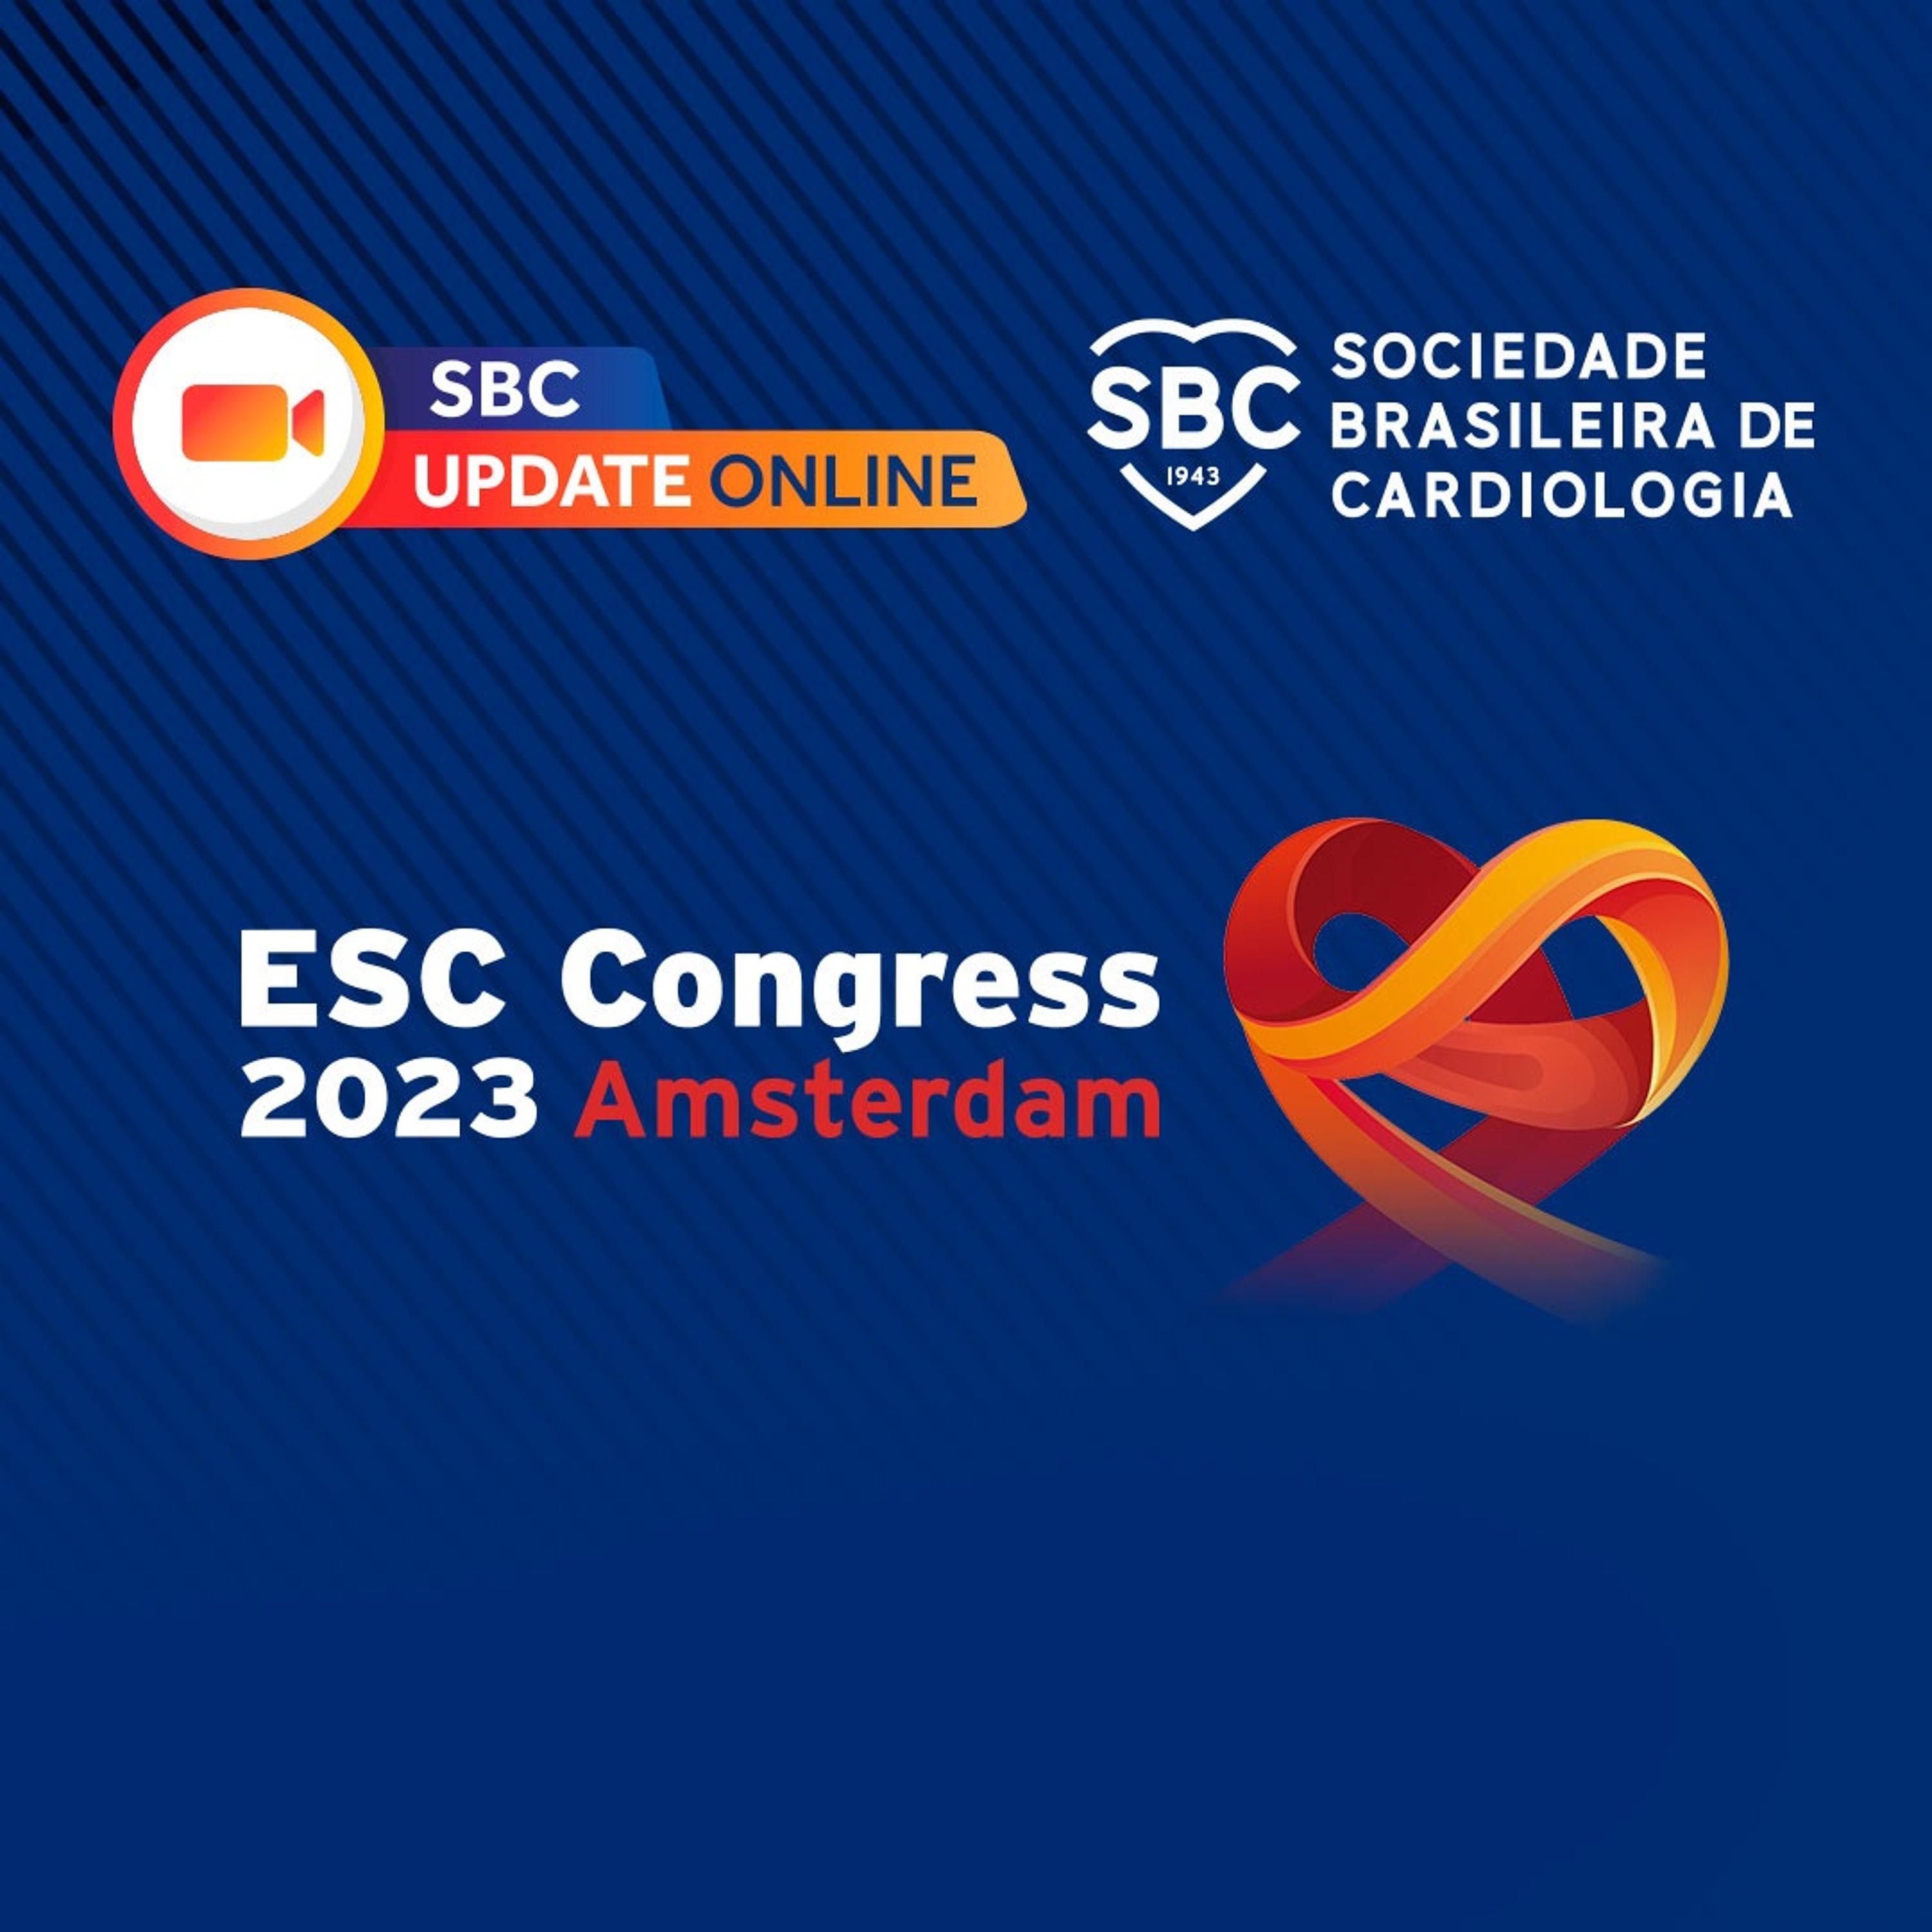 Ouça a live realizada no segundo dia do congresso europeu de cardiologia 2023, trazendo as principais novidades do momento na cardiologia.